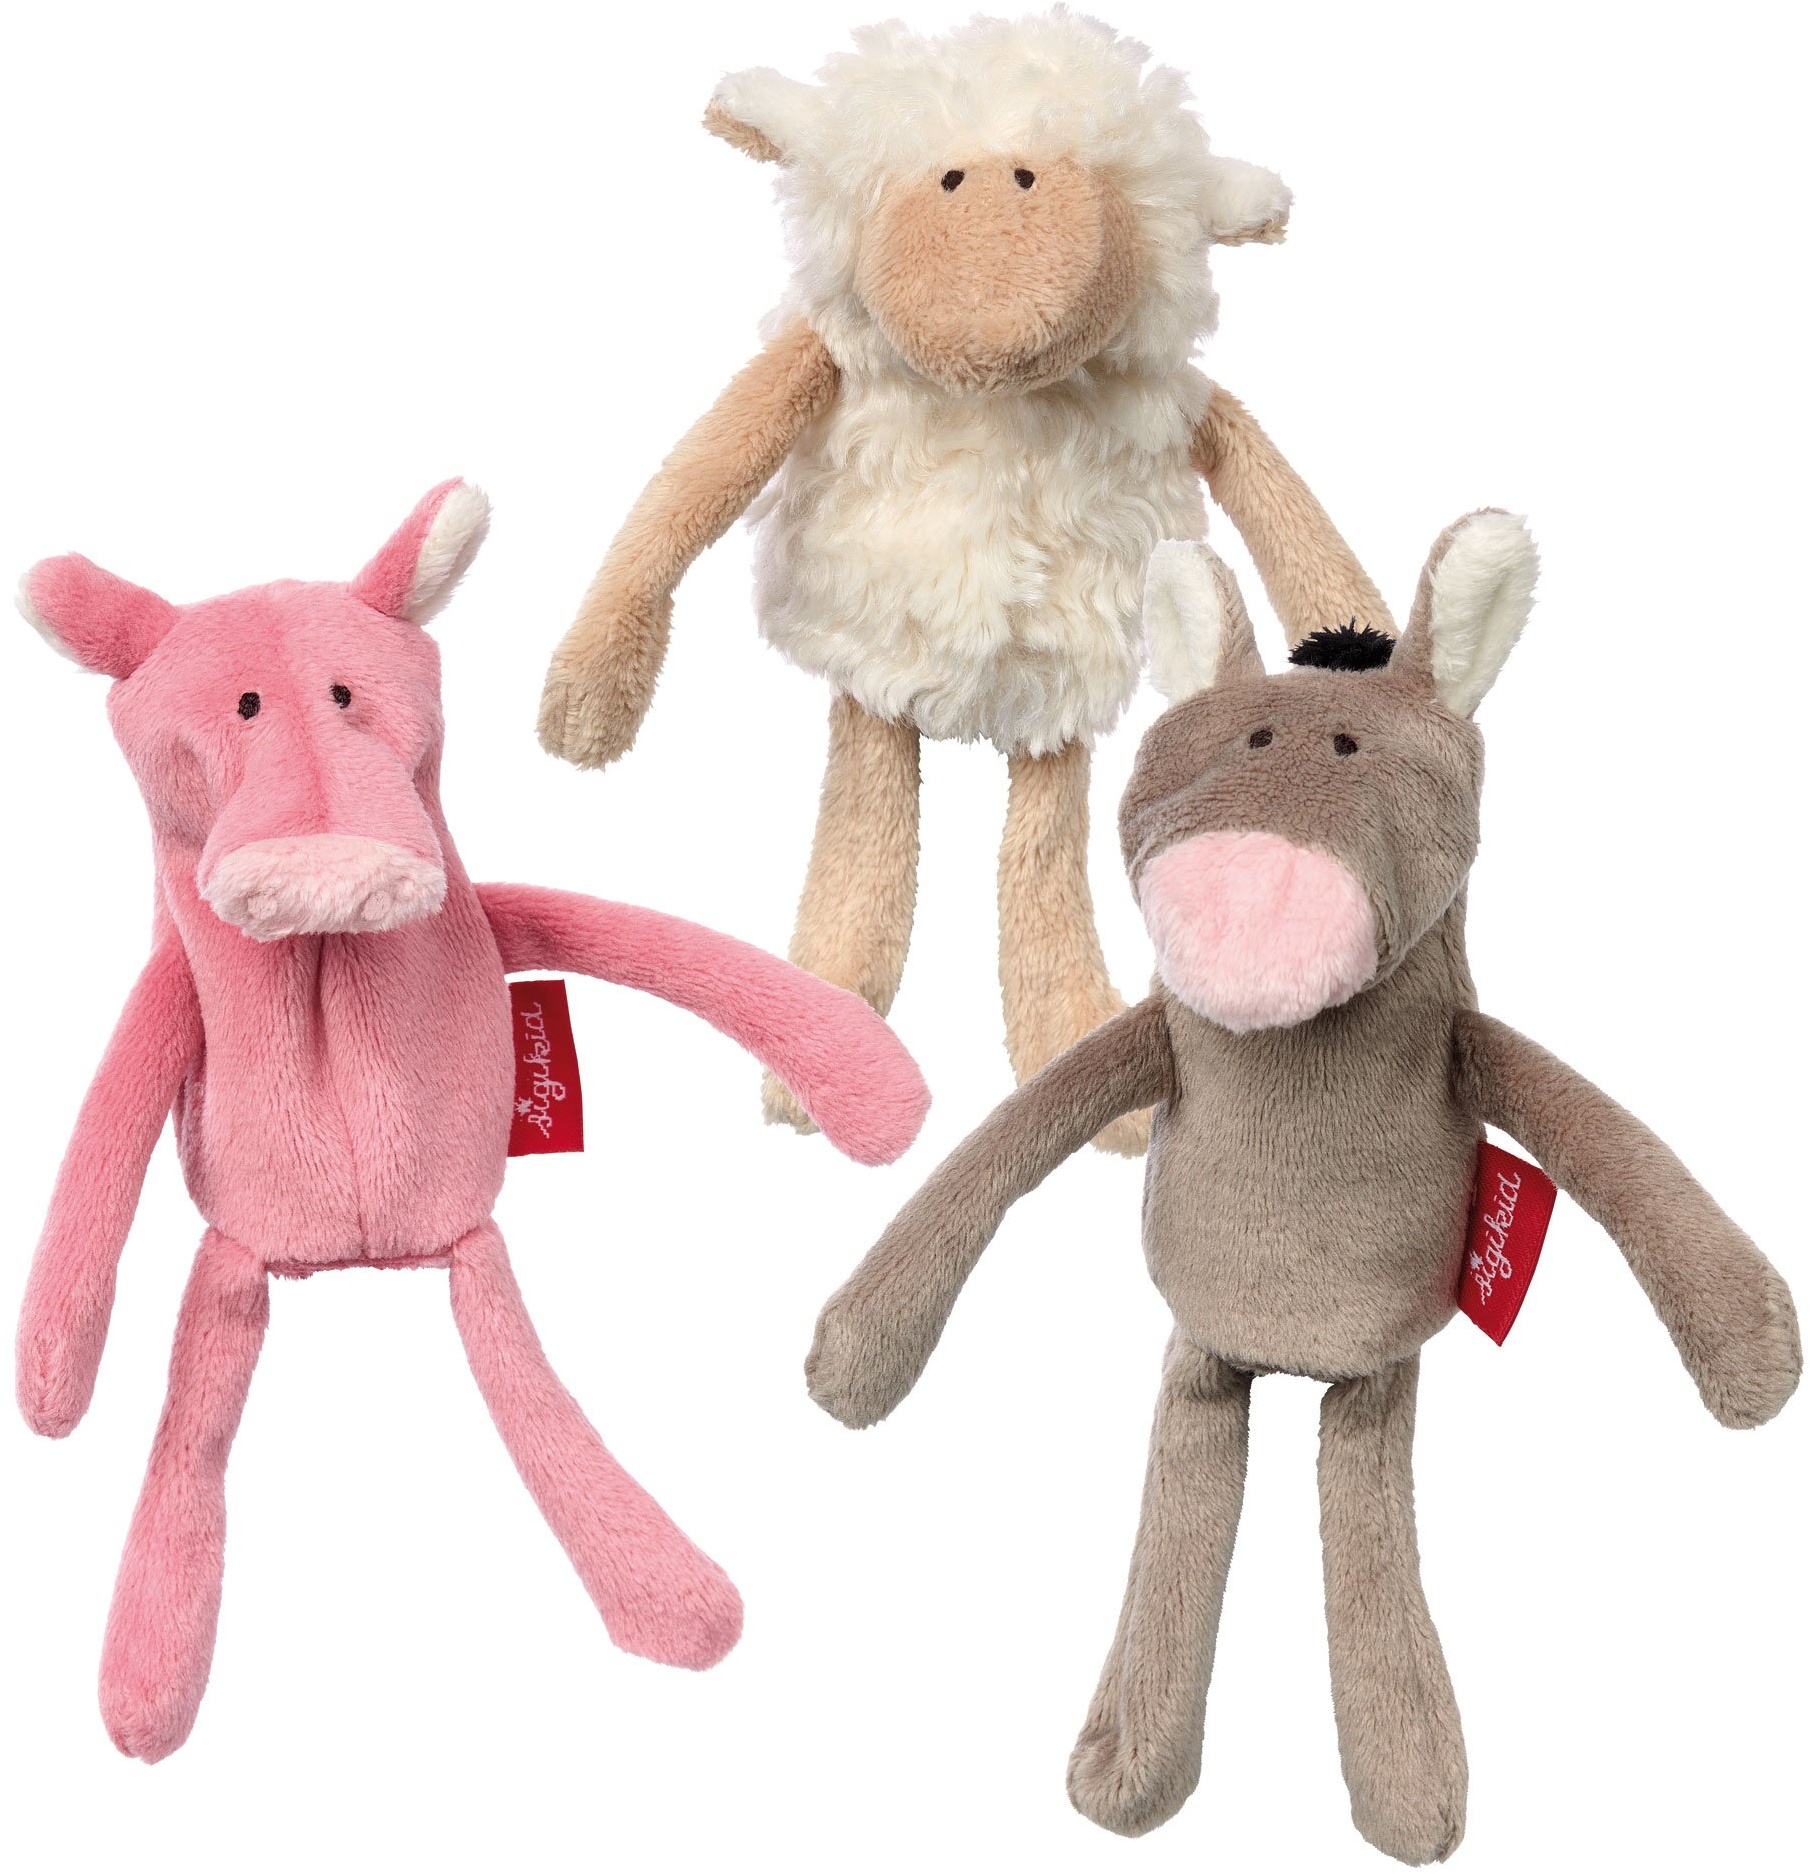 SIGIKID 41565 Fingerp-set Farm Soft PlayQ Mädchen und Jungen Babyspielzeug empfohlen ab 6 Monaten mehrfarbig, 14 cm